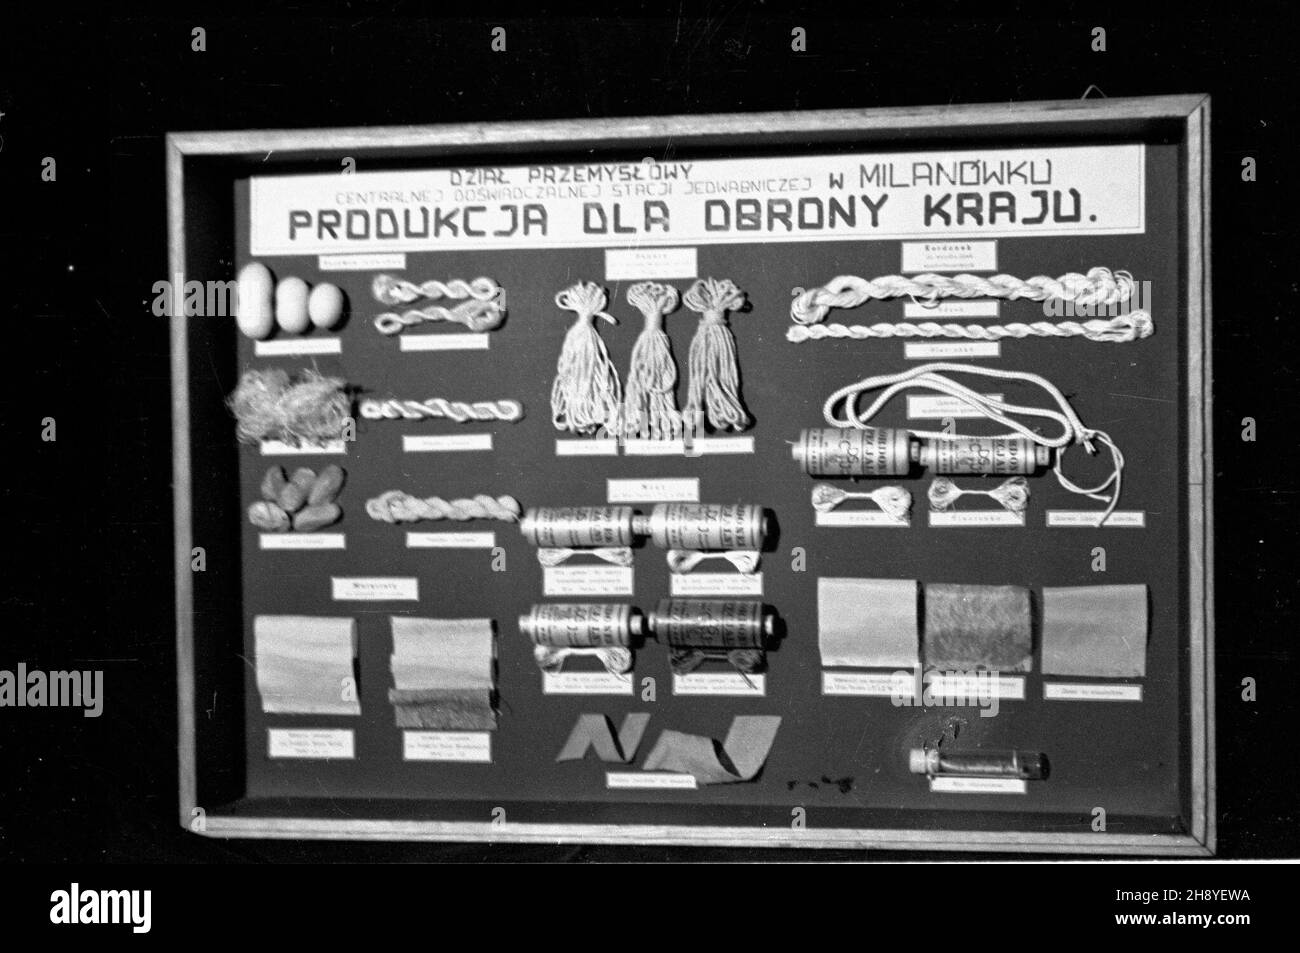 Milanówek, 1946 r. Centralna Doœwiadczalna Stacja Jedwabnicza. Zak³ad zajmowa³ siê hodowl¹ jedwabników i produkcj¹ tkanin. Za³o¿ony w 1924 r. przez Henryka i Stanis³awê Witaczków, po wojnie znacjonalizowany.  po/dl  PAP/Jerzy Baranowski      Milanowek, 1946. Central Experimental Silk Yarn Production Station. The plant was involved in silkworm breeding and silk production. Established in 1924 by Henryk and Stanislawa Witaczek, was nationalized after the war.   po/dl  PAP/Jerzy Baranowski Stock Photo